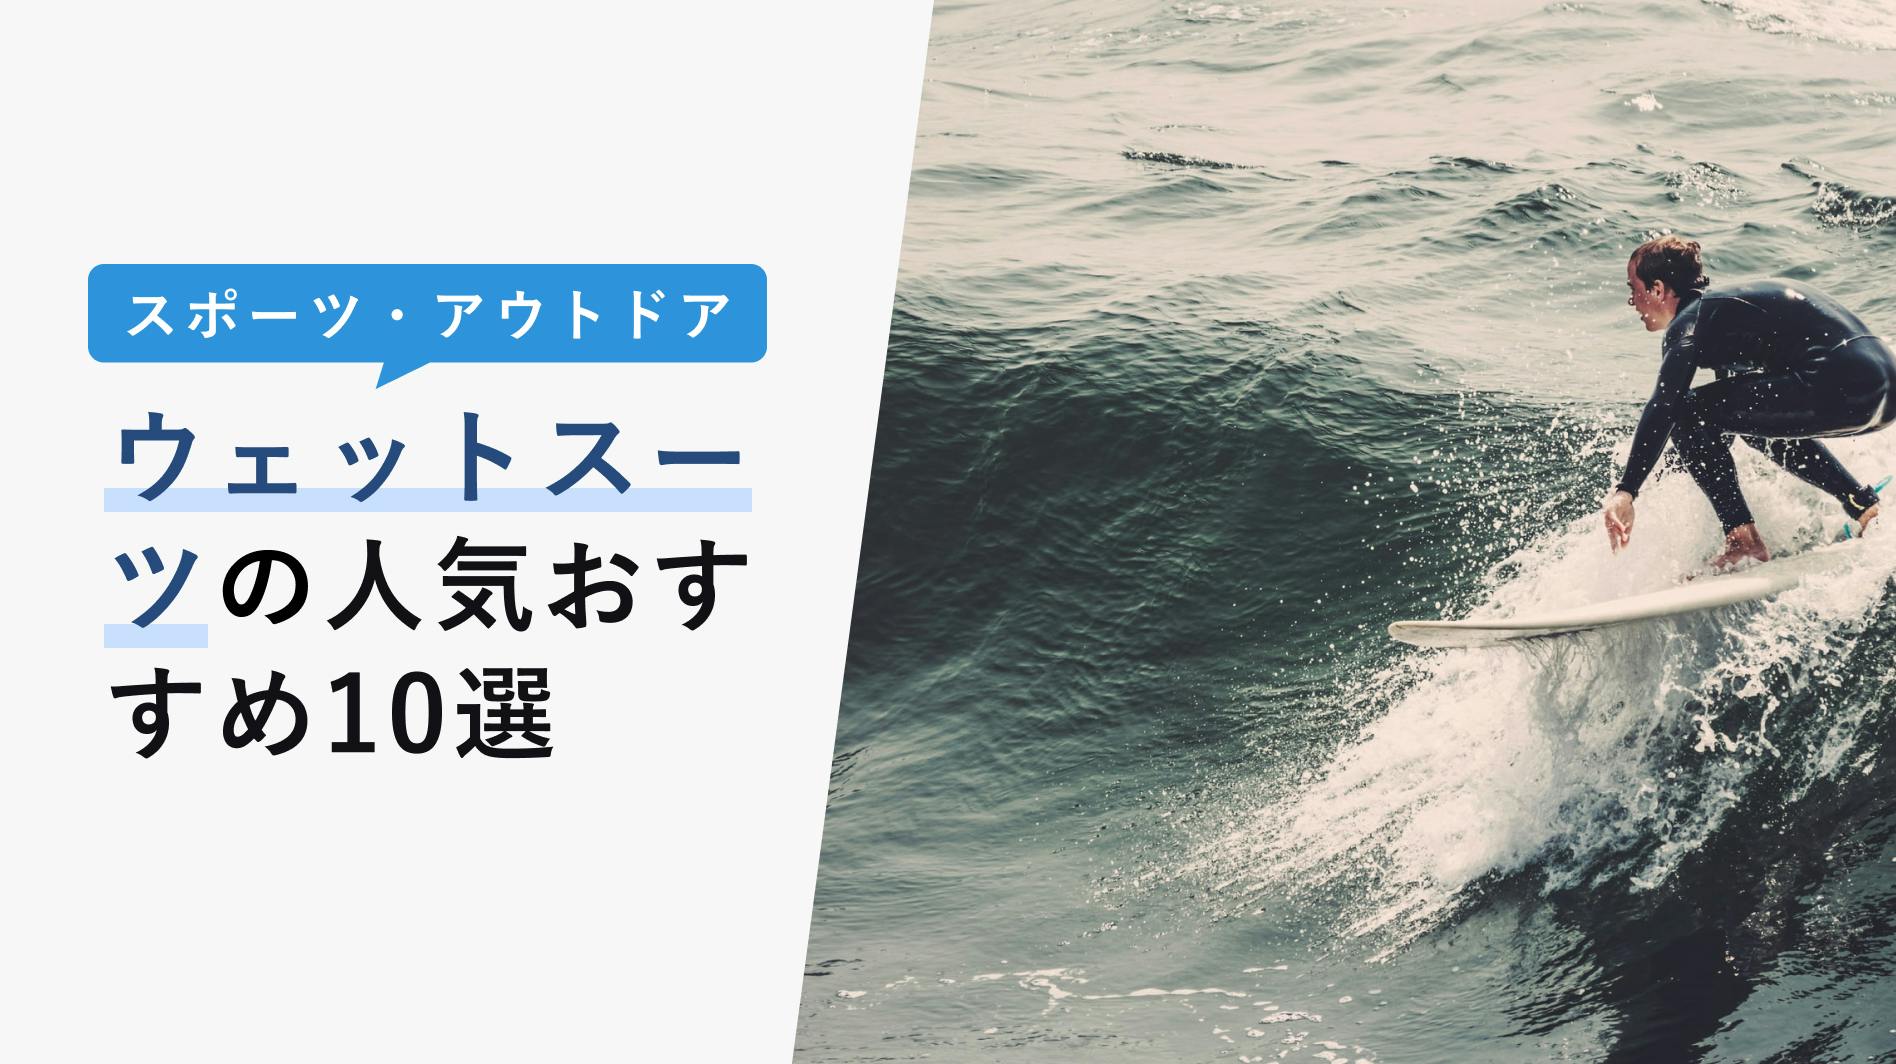 熱販売 IKARI イカリ シュノーケリングダイビングフィン 日本製 フルフットタイプ カレント ブラック SS AF-426 ブルー 